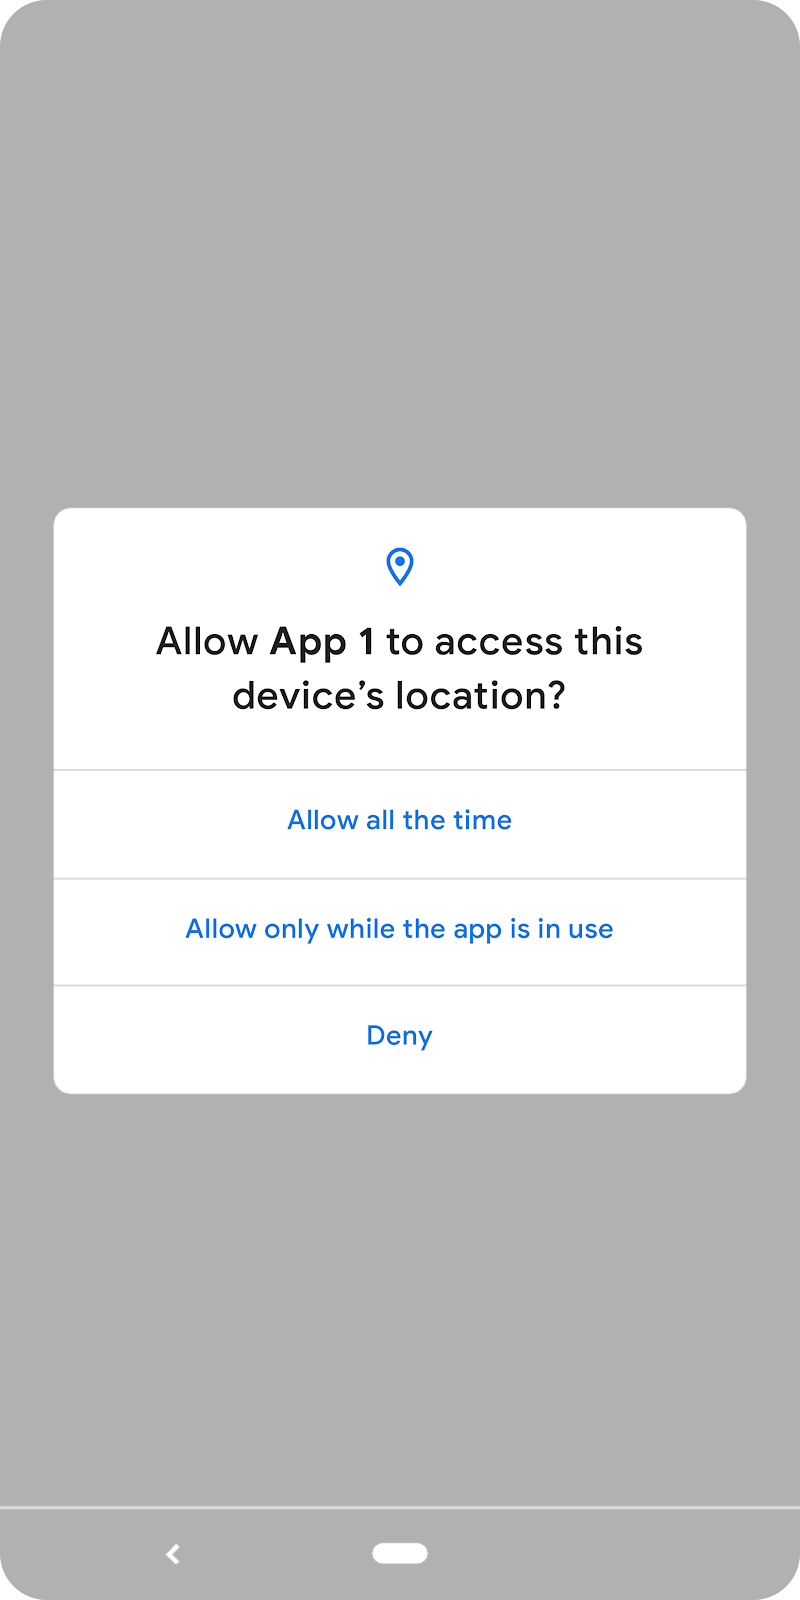   pantalla de notificación: permite que la aplicación 1 acceda a la ubicación del dispositivo. 